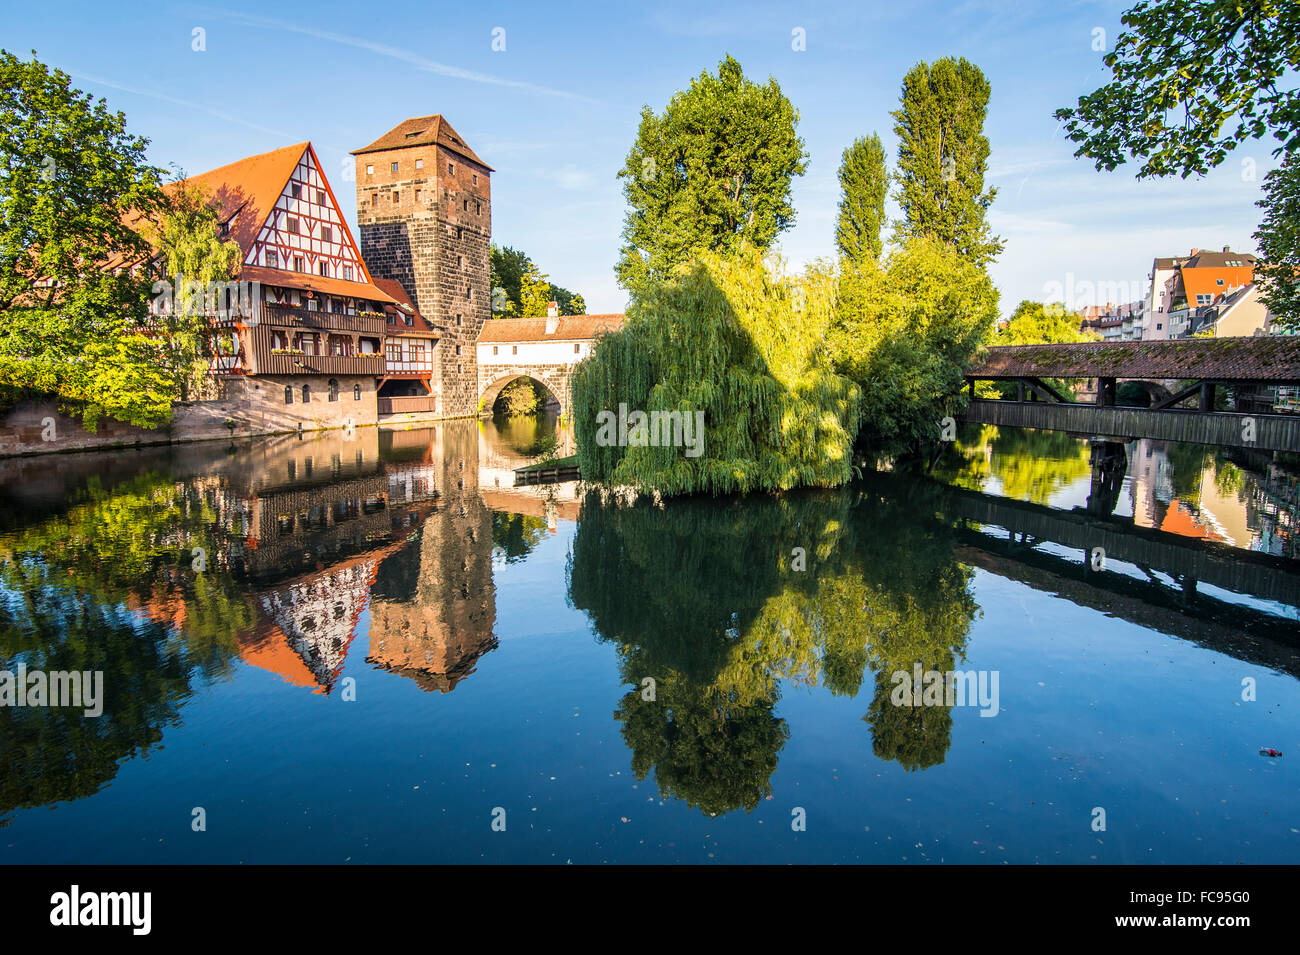 Vieilles maisons à colombages et pendaison tower, Nuremberg, Middle Franconia, Bavaria, Germany, Europe Banque D'Images